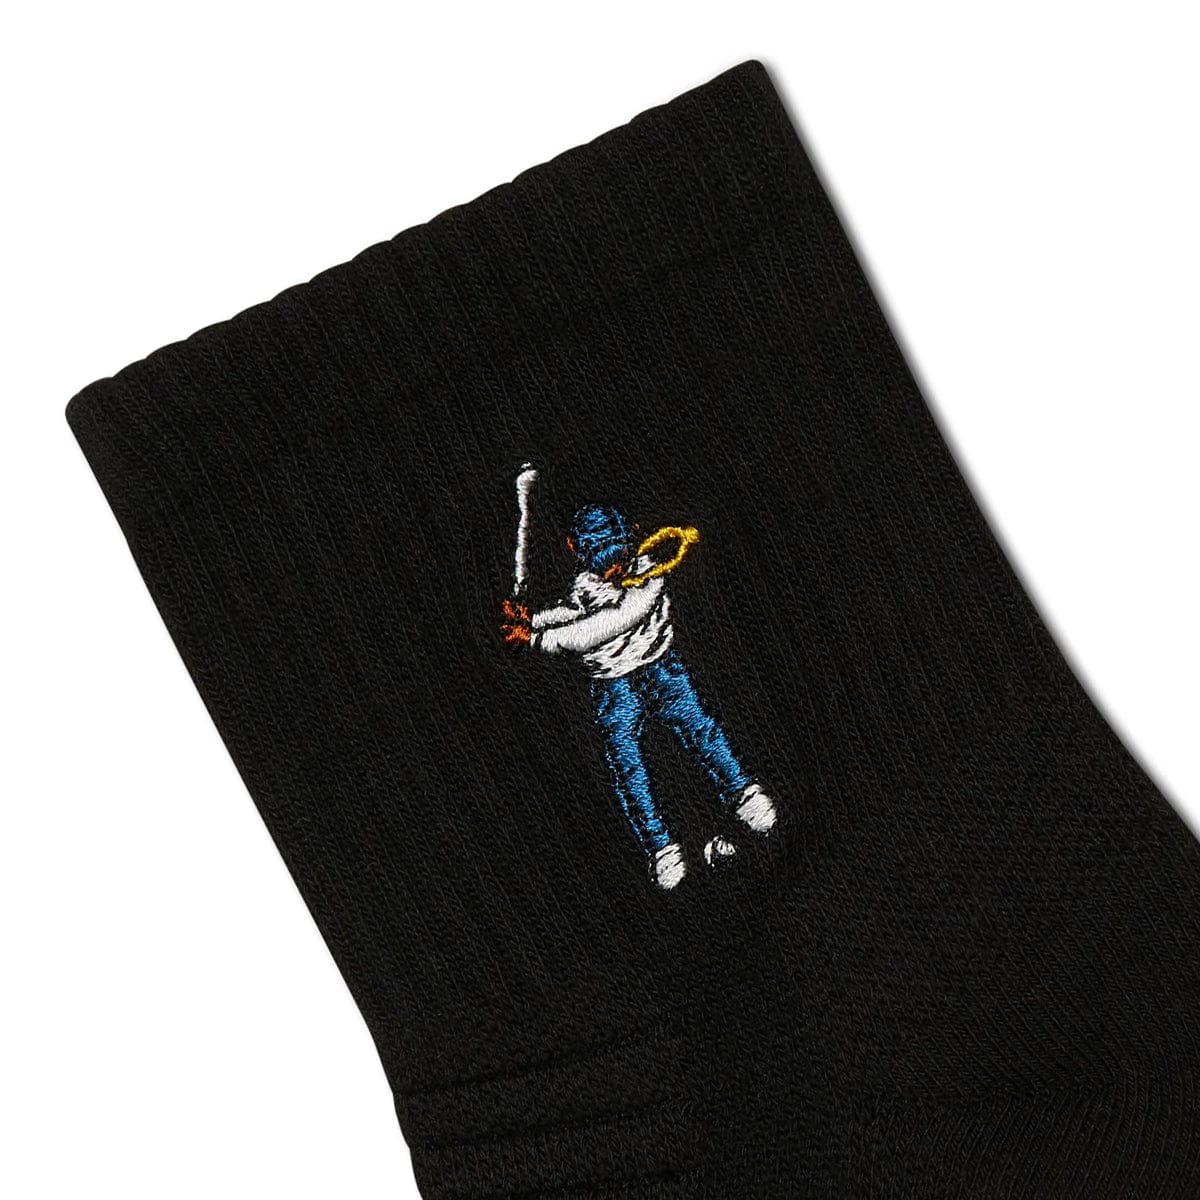 Eastside Golf Socks BLACK / O/S SOCKS